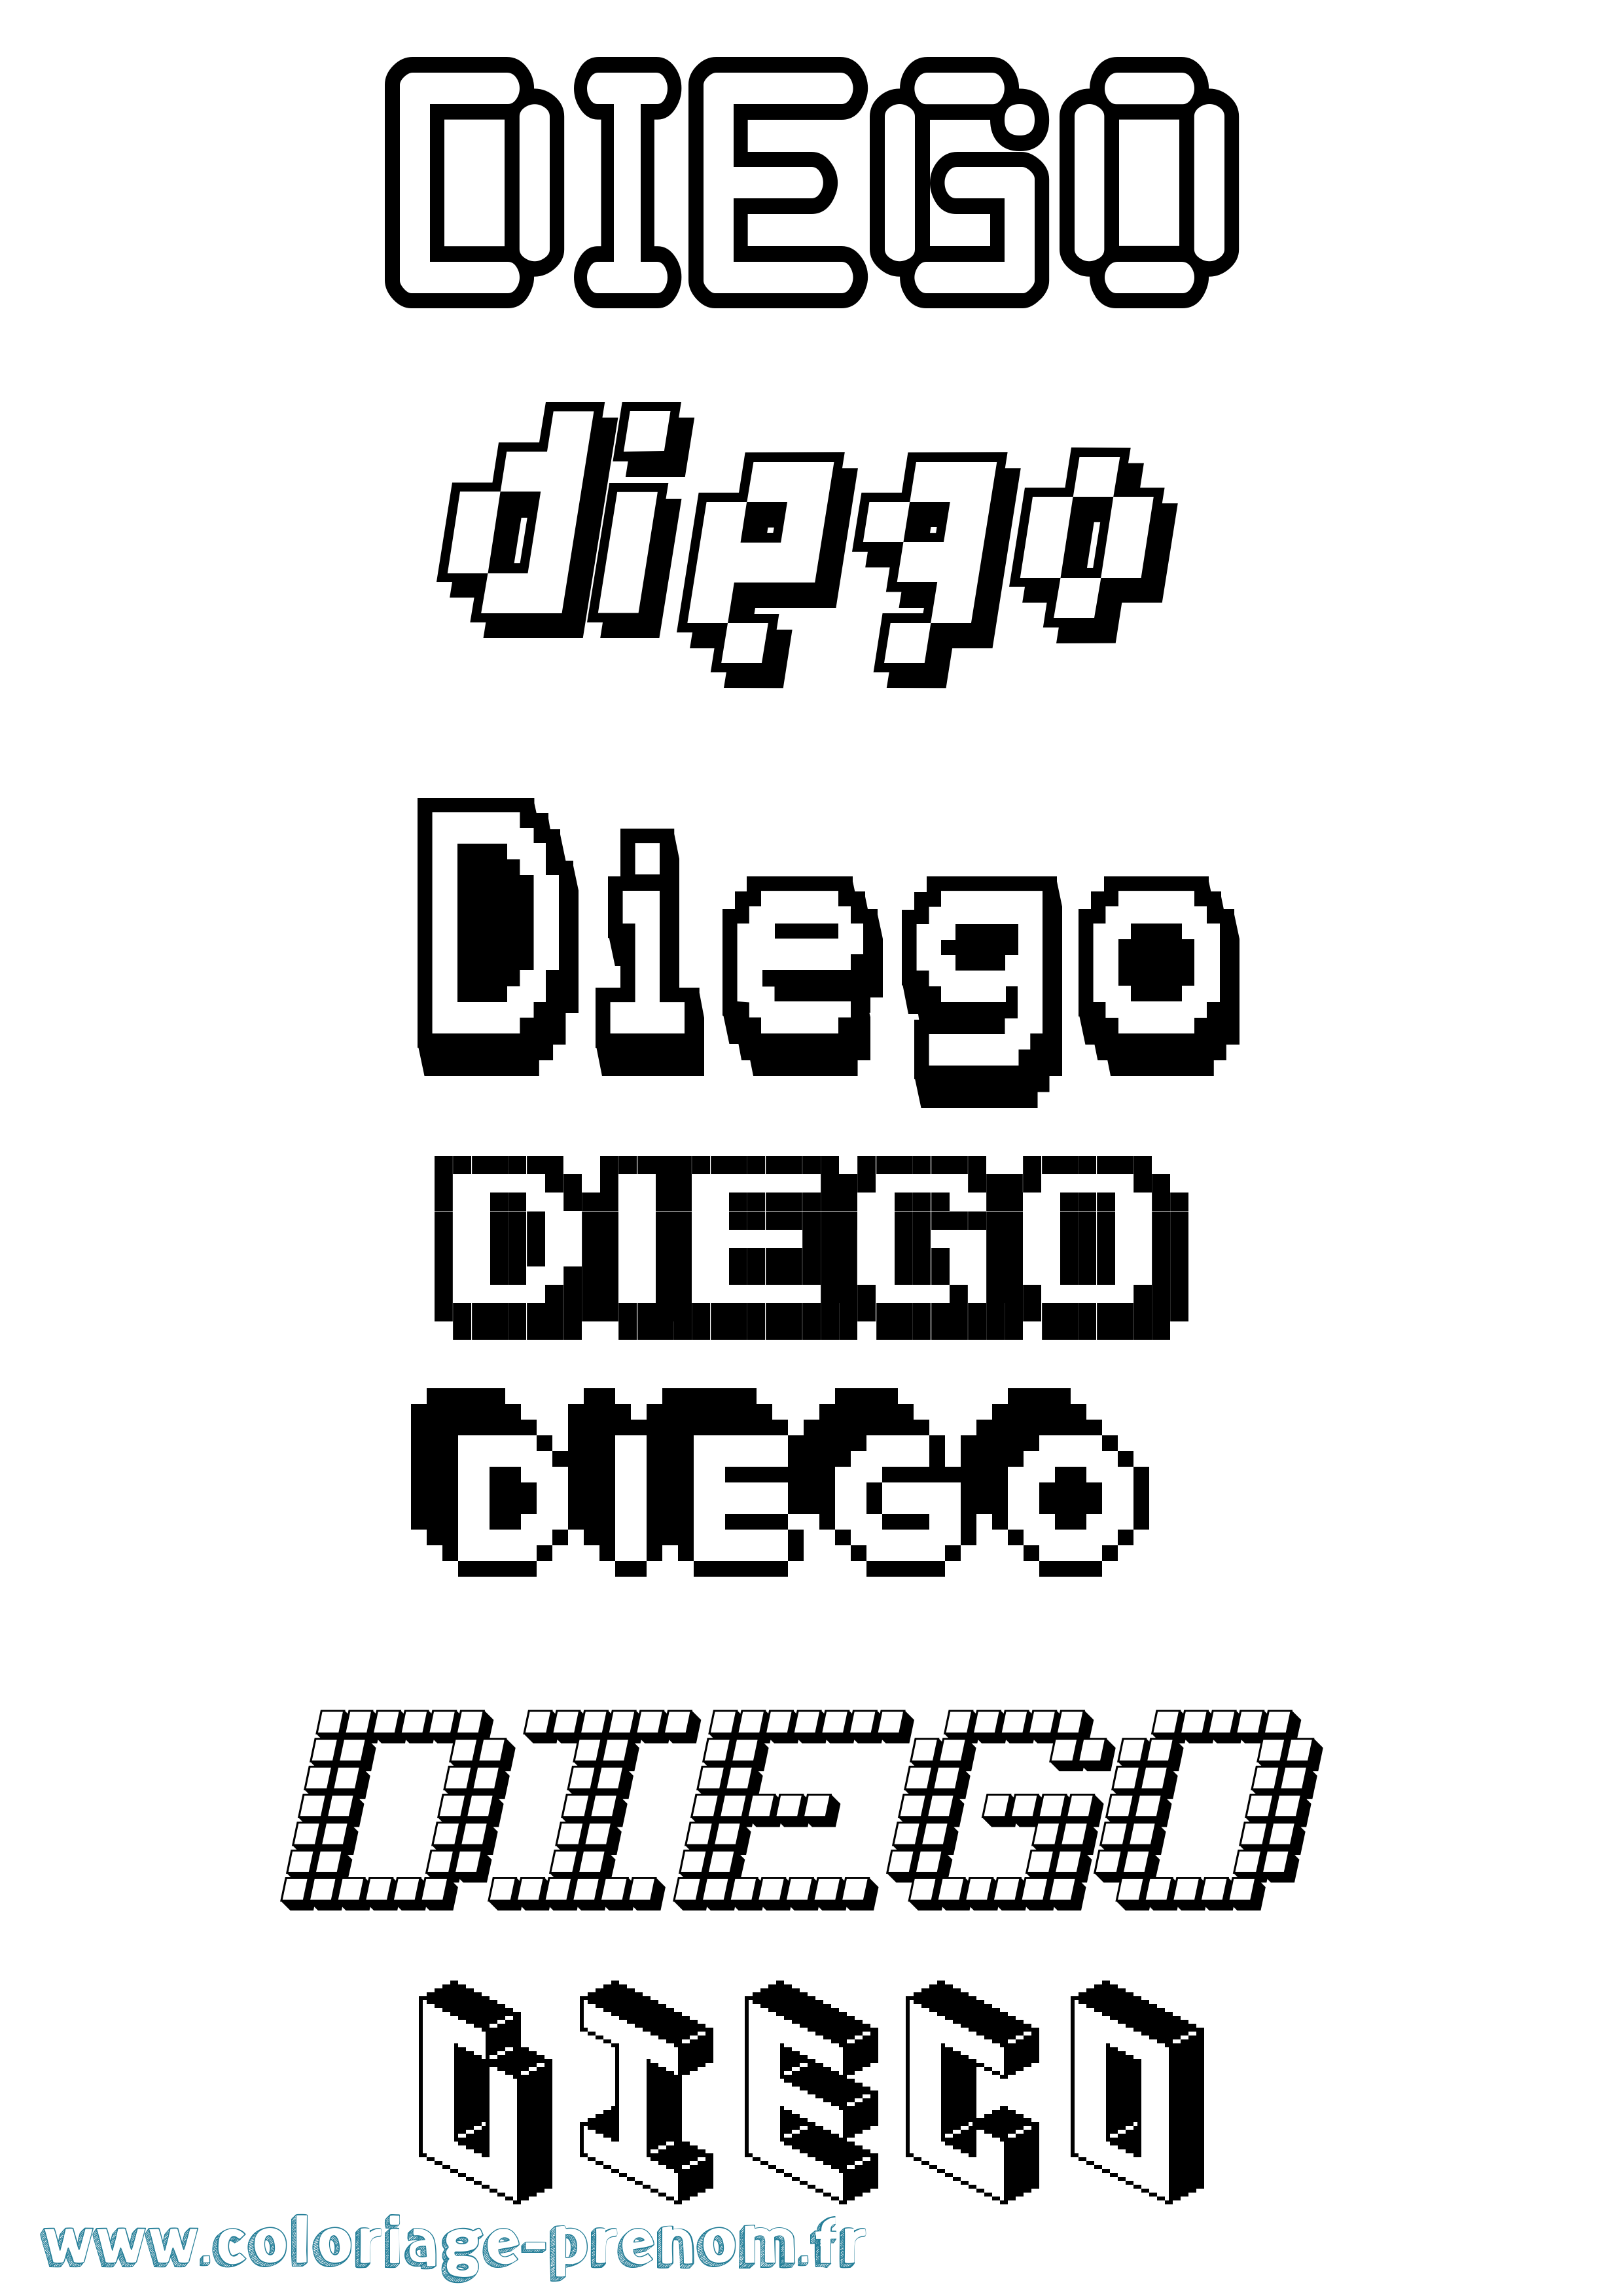 Coloriage prénom Diego